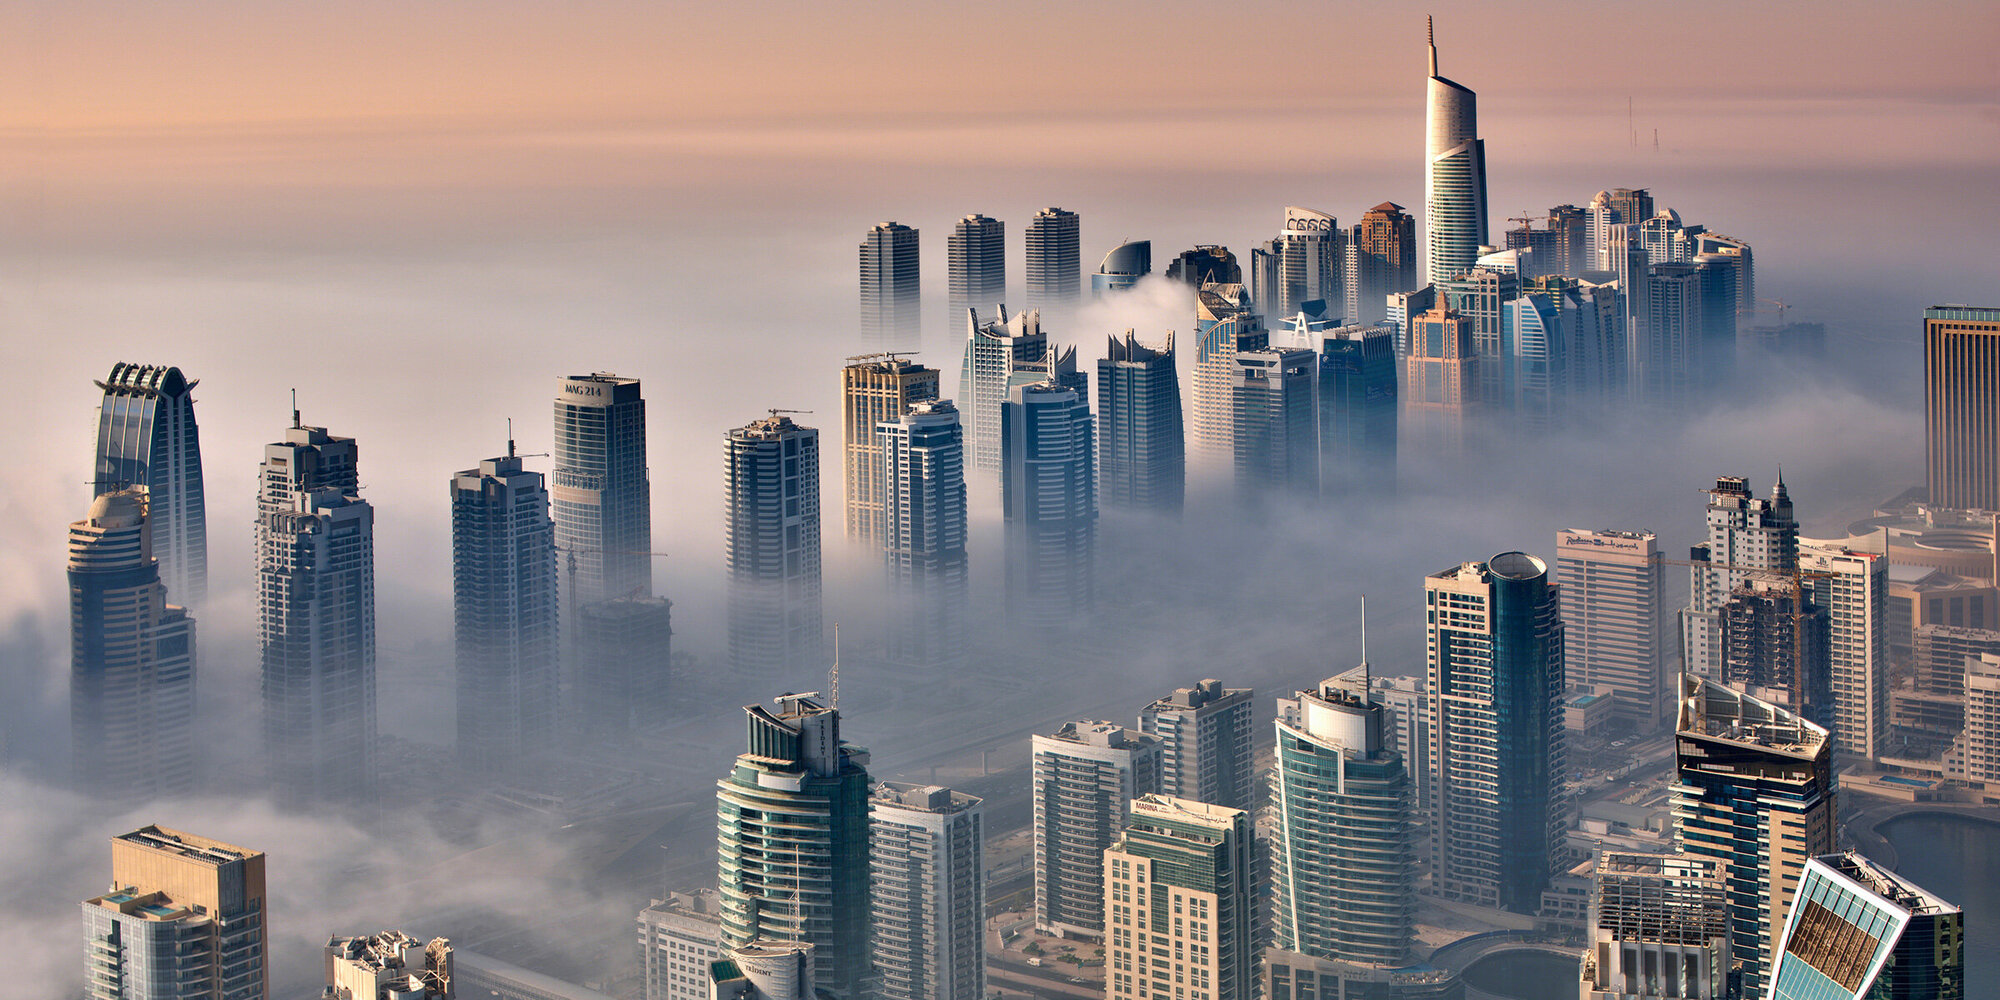 Blick auf die Skyline von Dubai